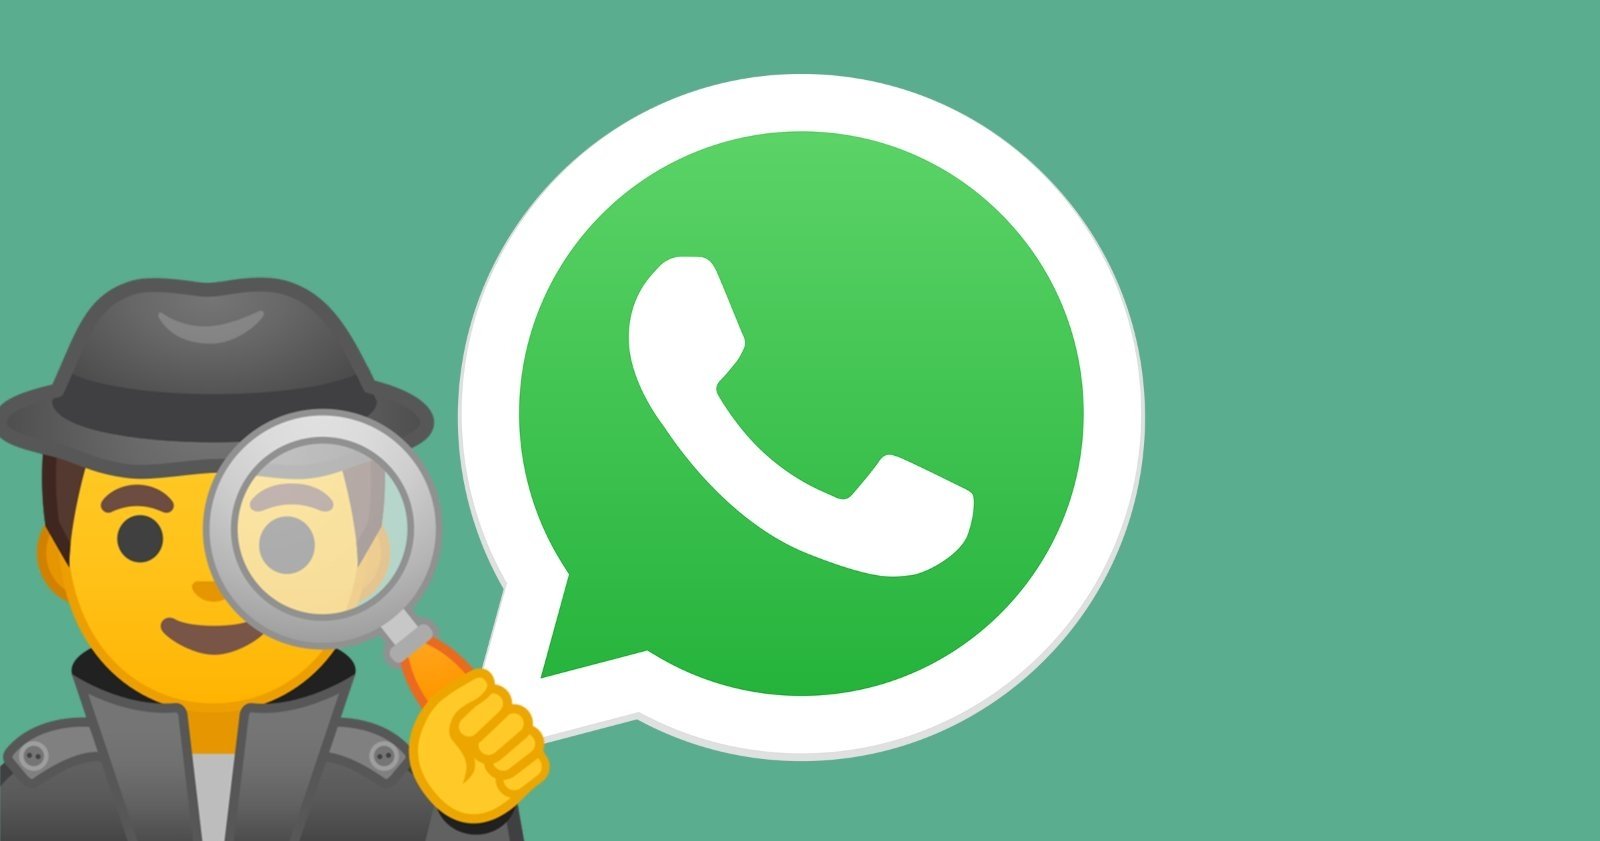 Icono de la app de WhatsApp junto al emoji de un espía.